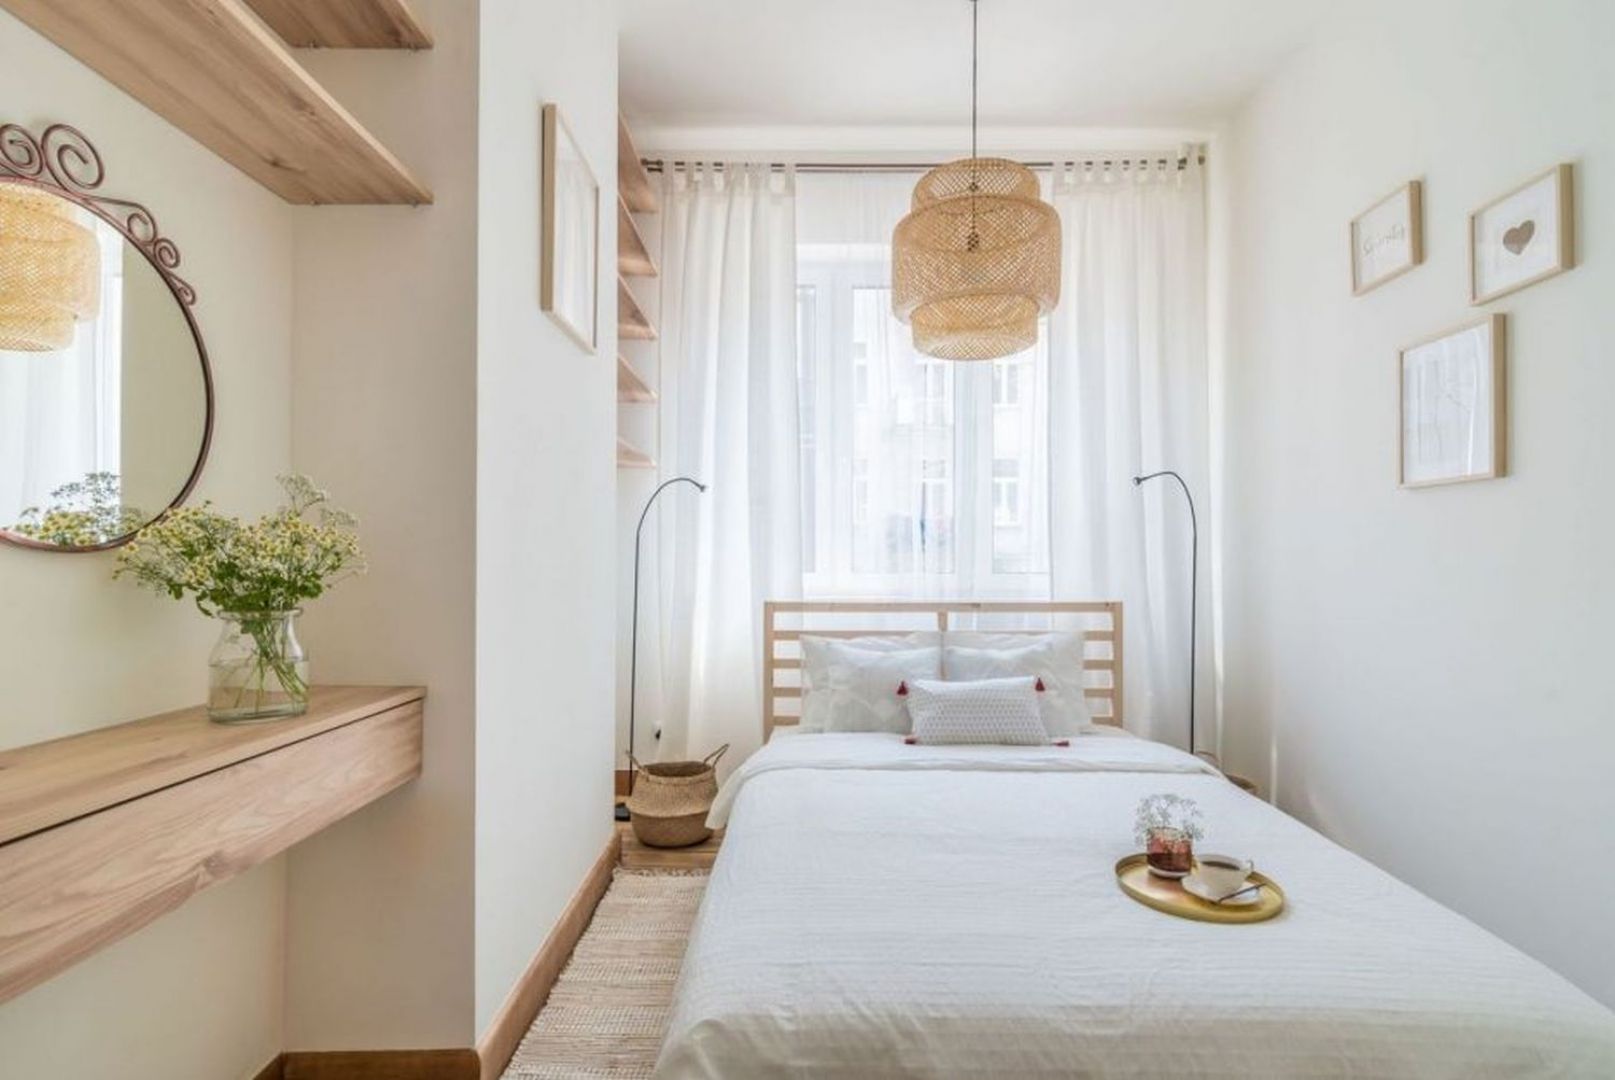 Nieduża sypialnia urządzona w bieli i z dużą ilością drewna. Projekt i stylizacja: Ola Dąbrówka, pracownia Good Vibes Interiors. Fot. Marcin Mularczyk